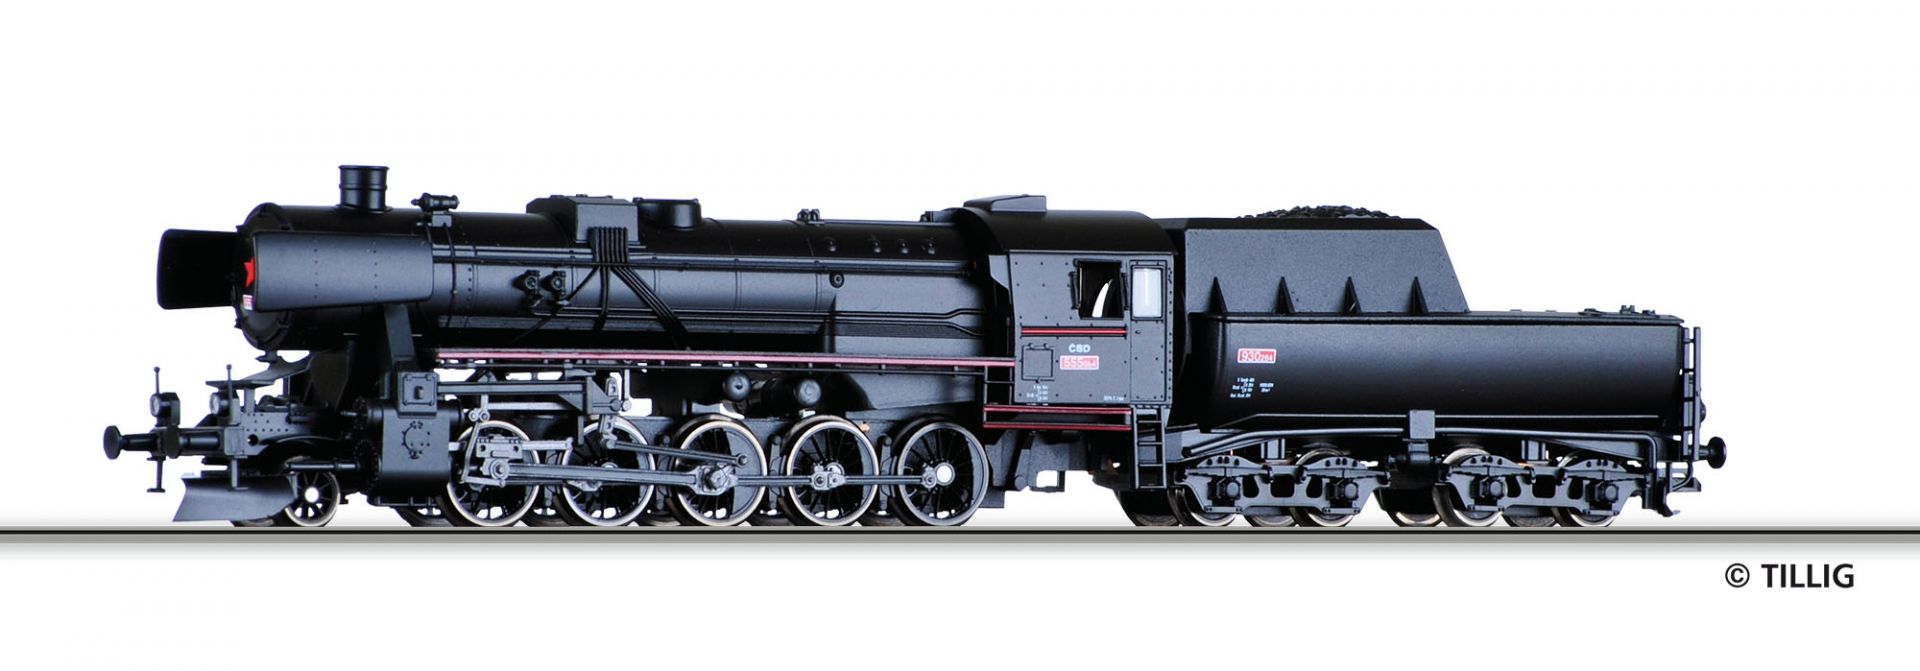 02269 | Dampflokomotive CSD -werksseitig ausverkauft-